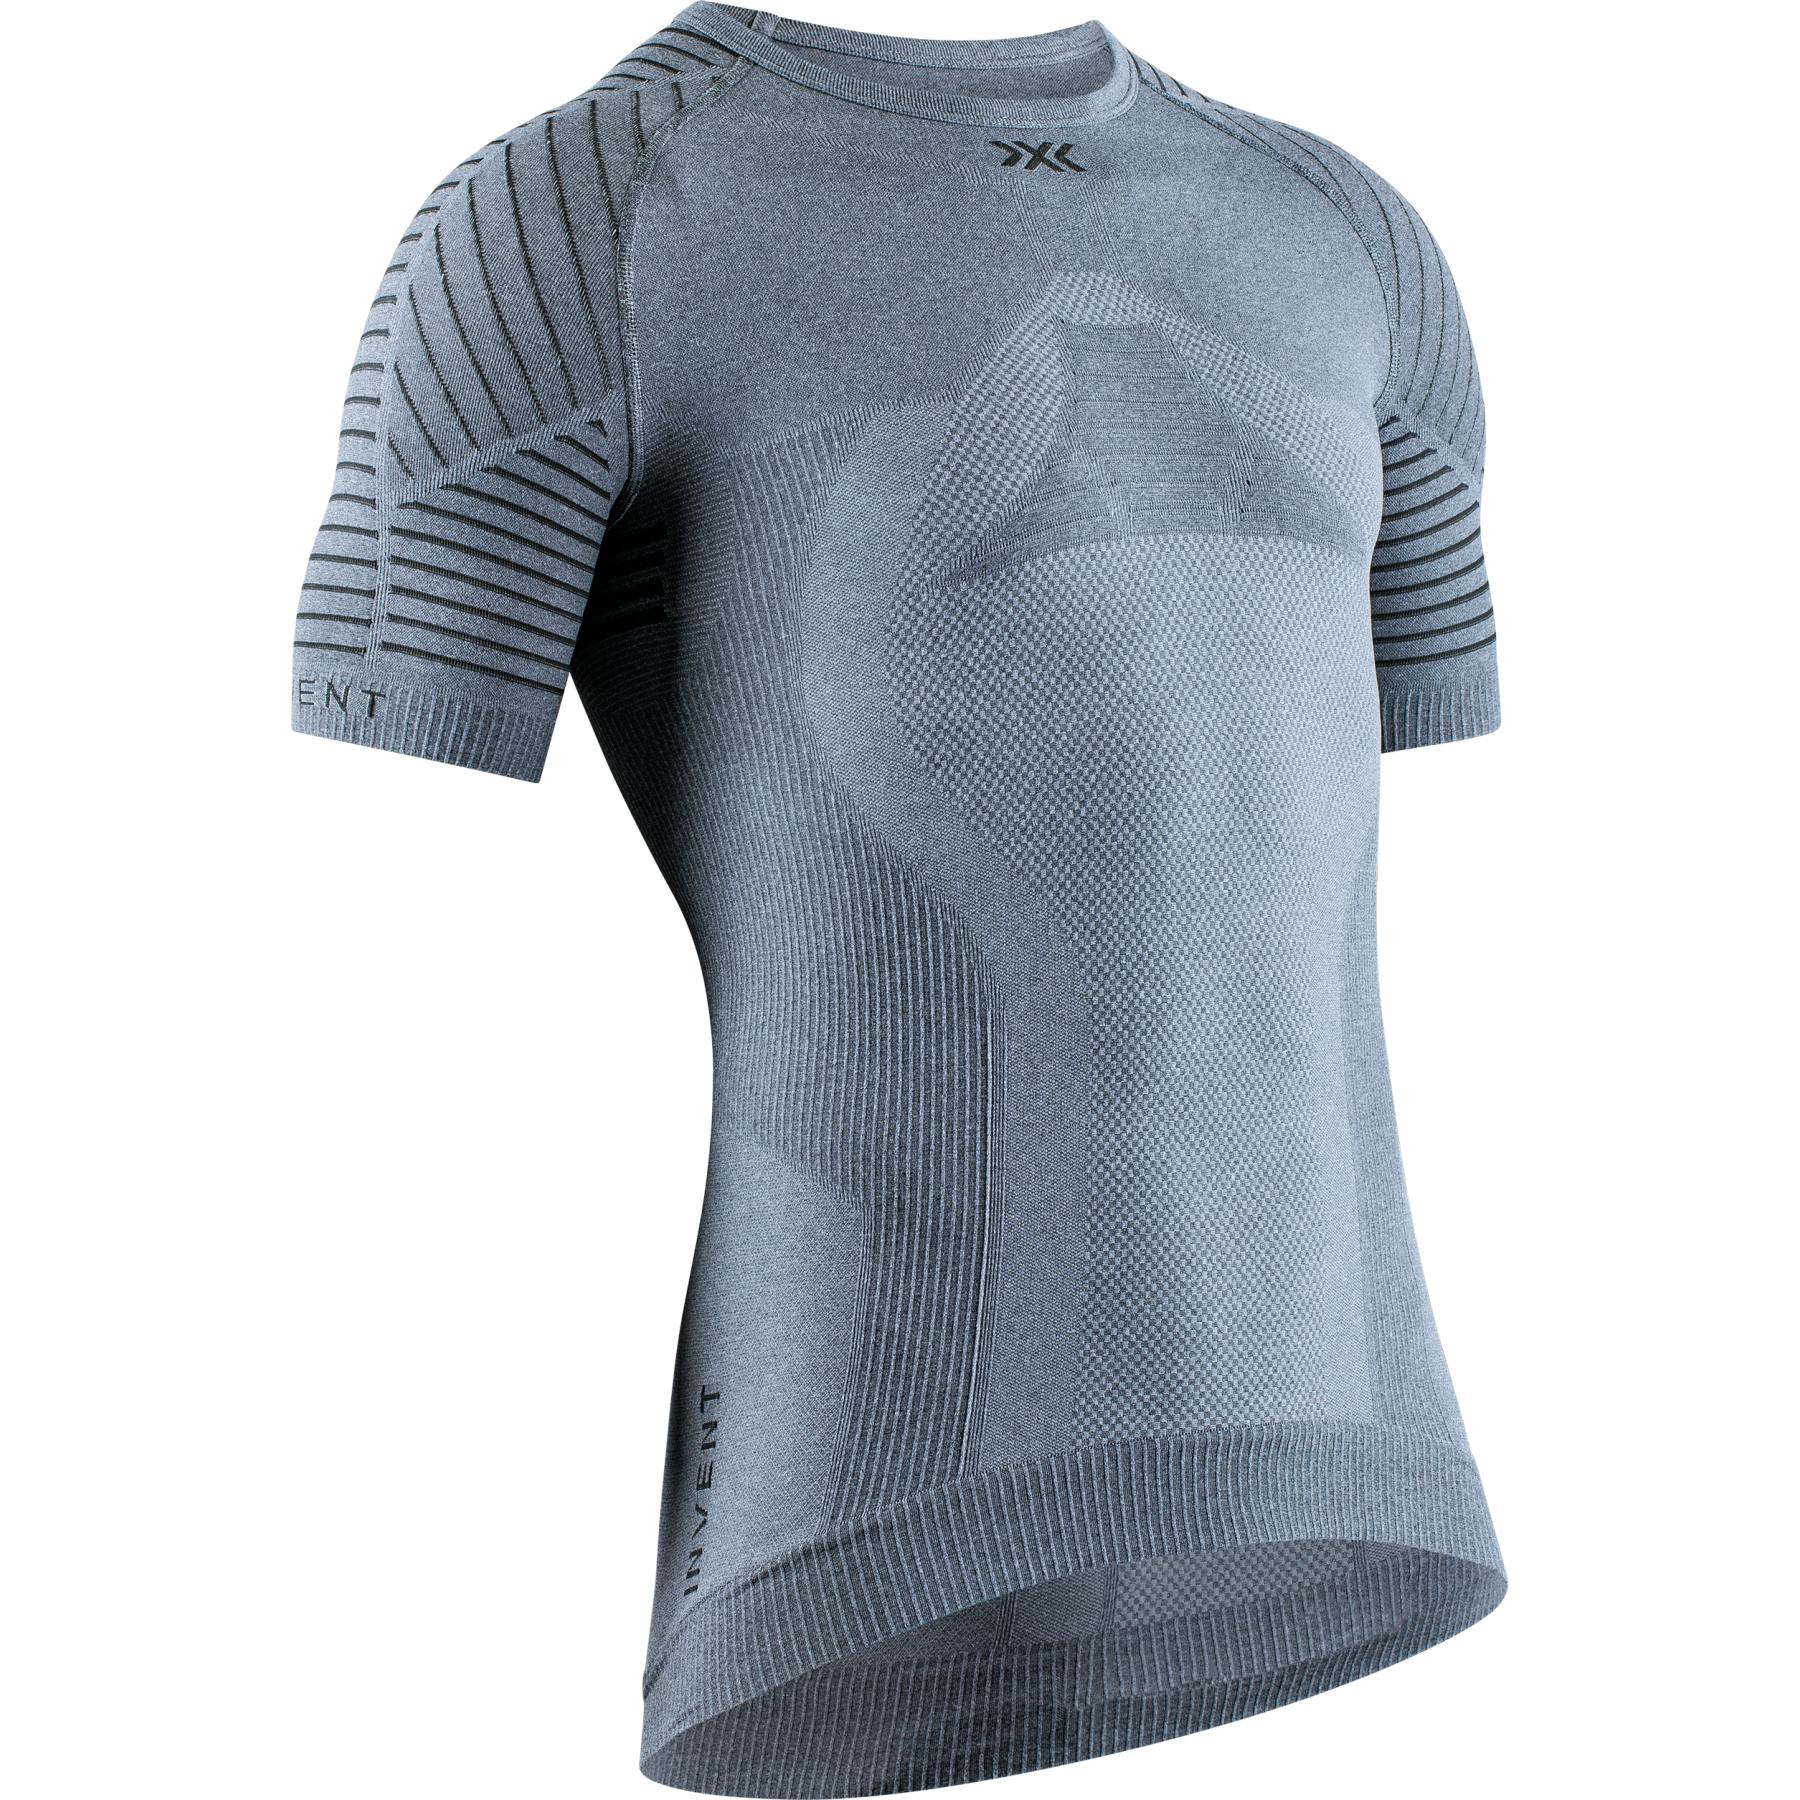 Productfoto van X-Bionic Invent 4.0 LT Round Neck Onderhemd Heren - grey melange/anthracite